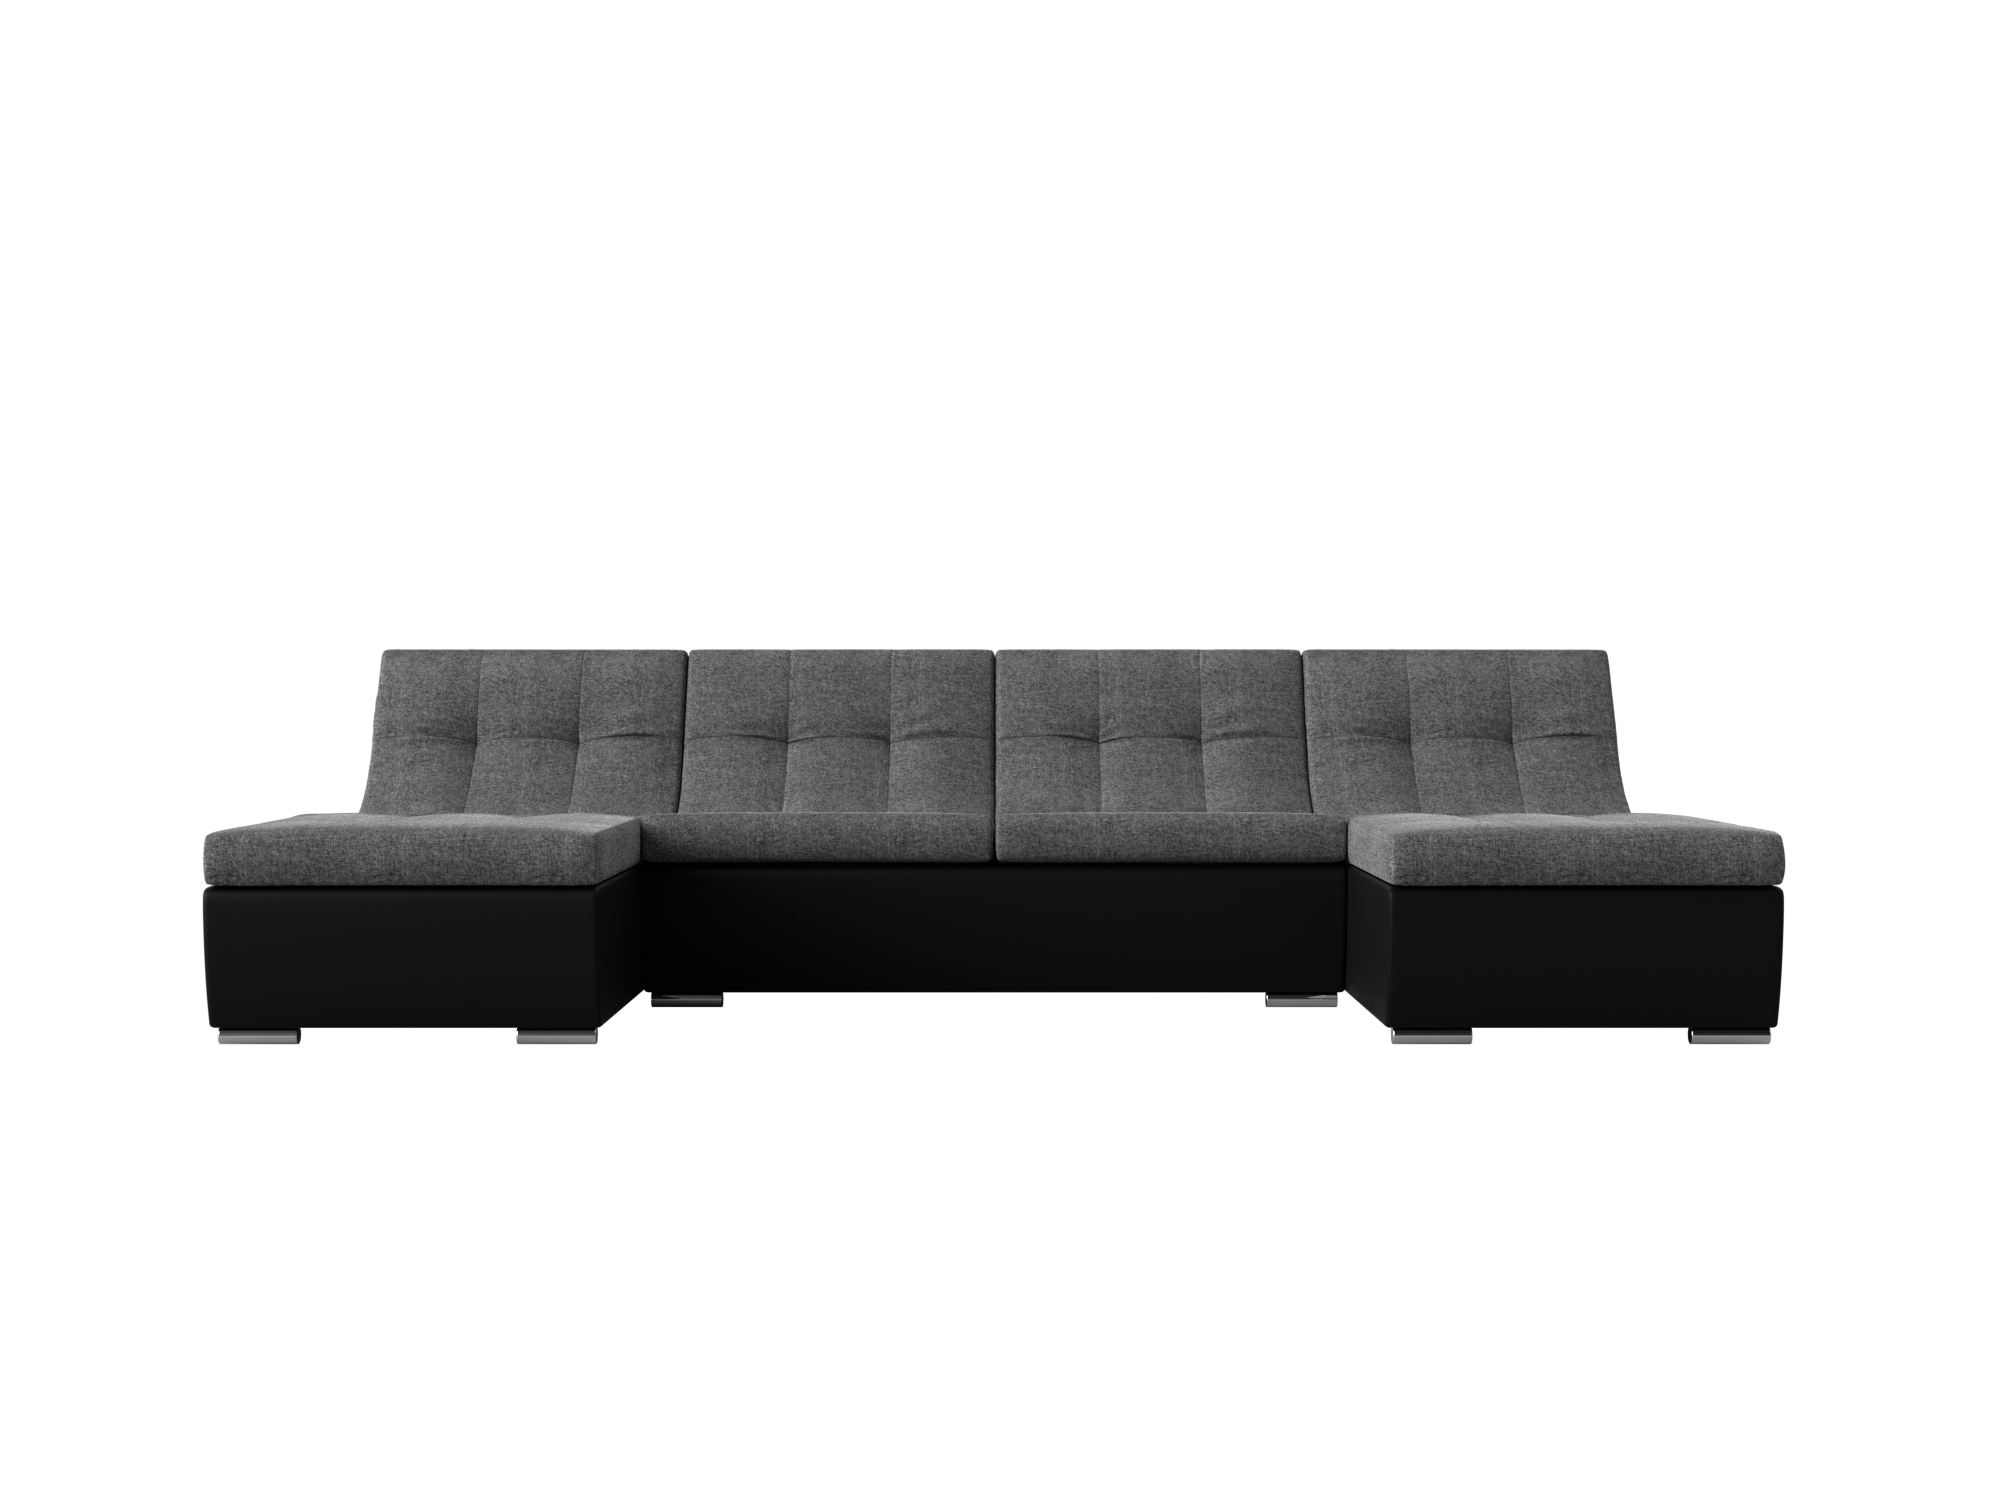 П-образный модульный диван Монреаль MebelVia Серый, Черный, Рогожка, Экокожа, ЛДСП диван артмебель валенсия рогожка серый п образный